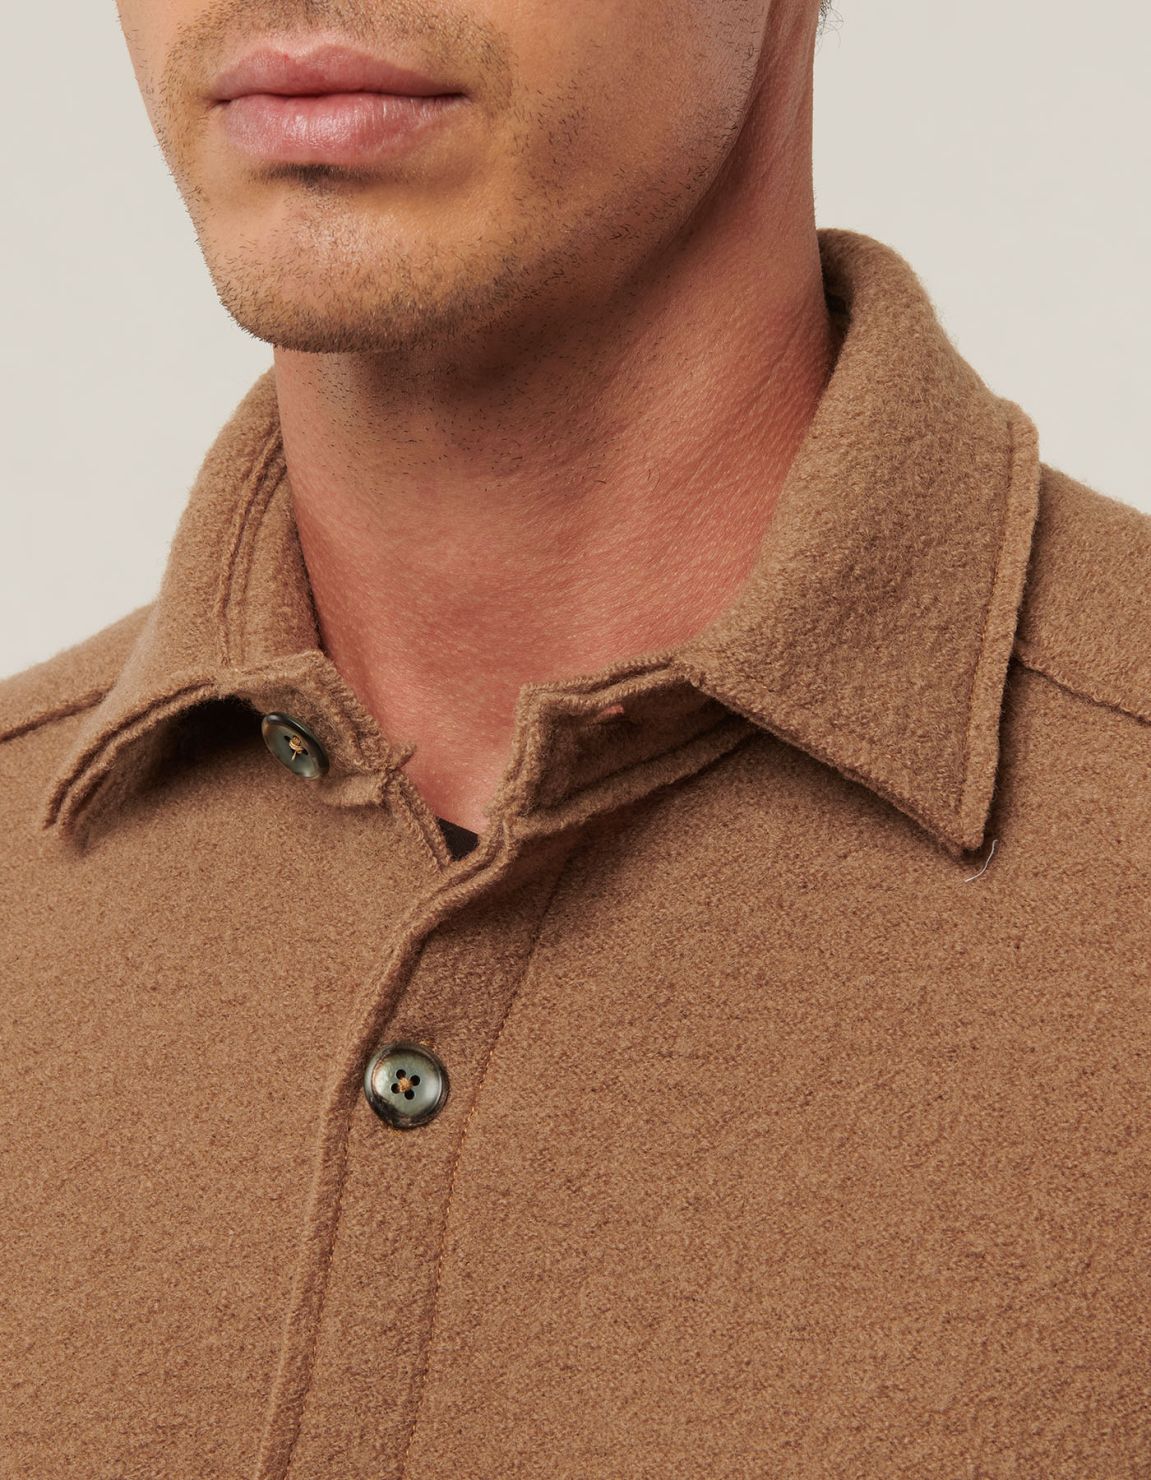 Camel Woven Solid colour Shirt Collar spread Over 3